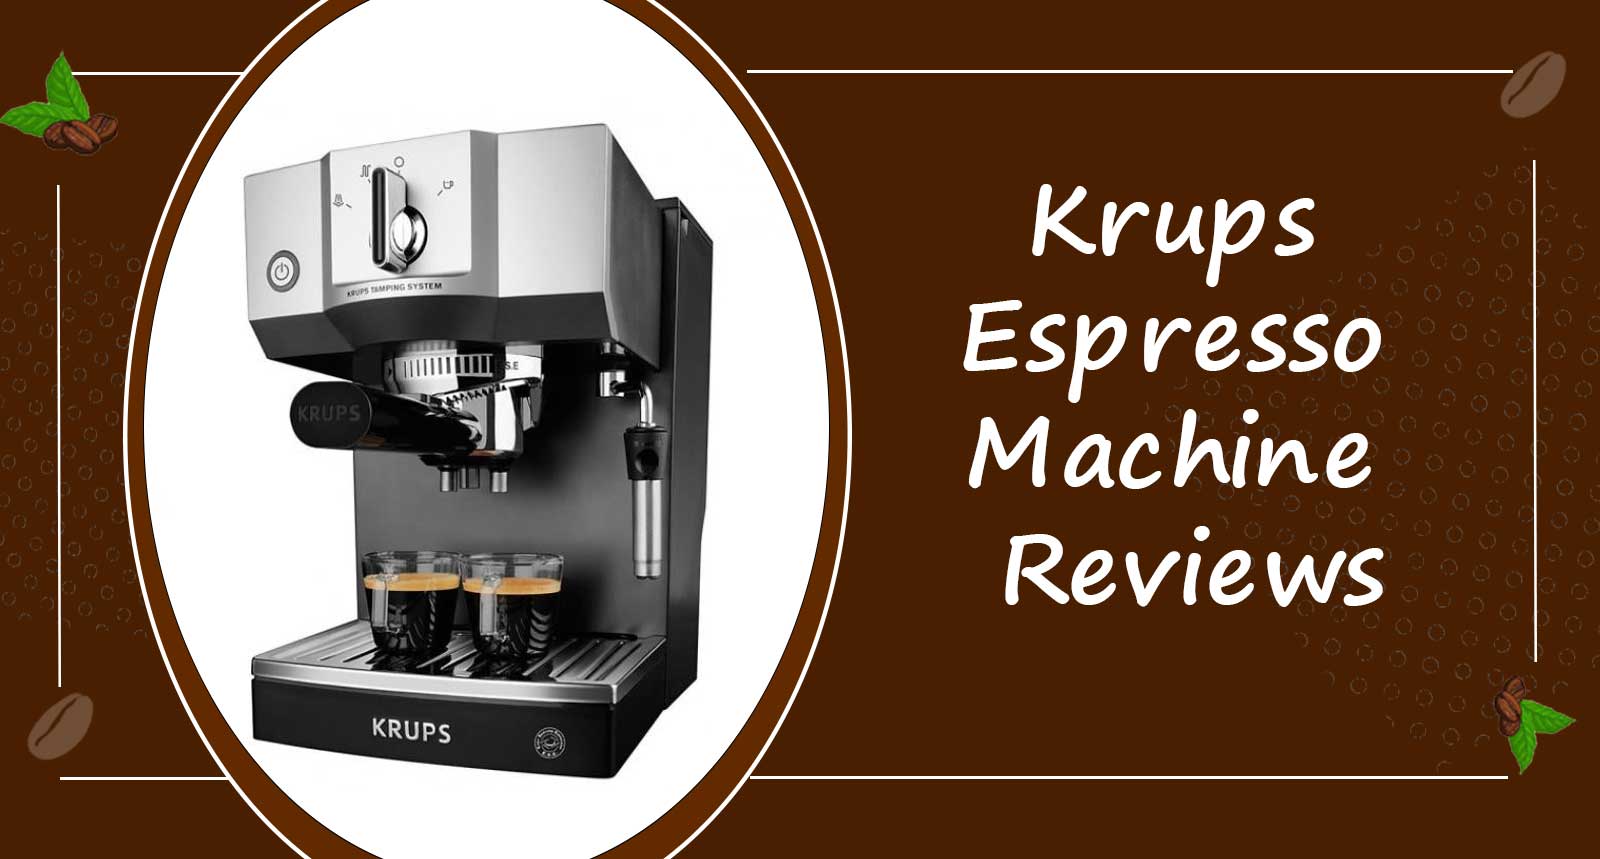 Krups Espresso Machine Reviews